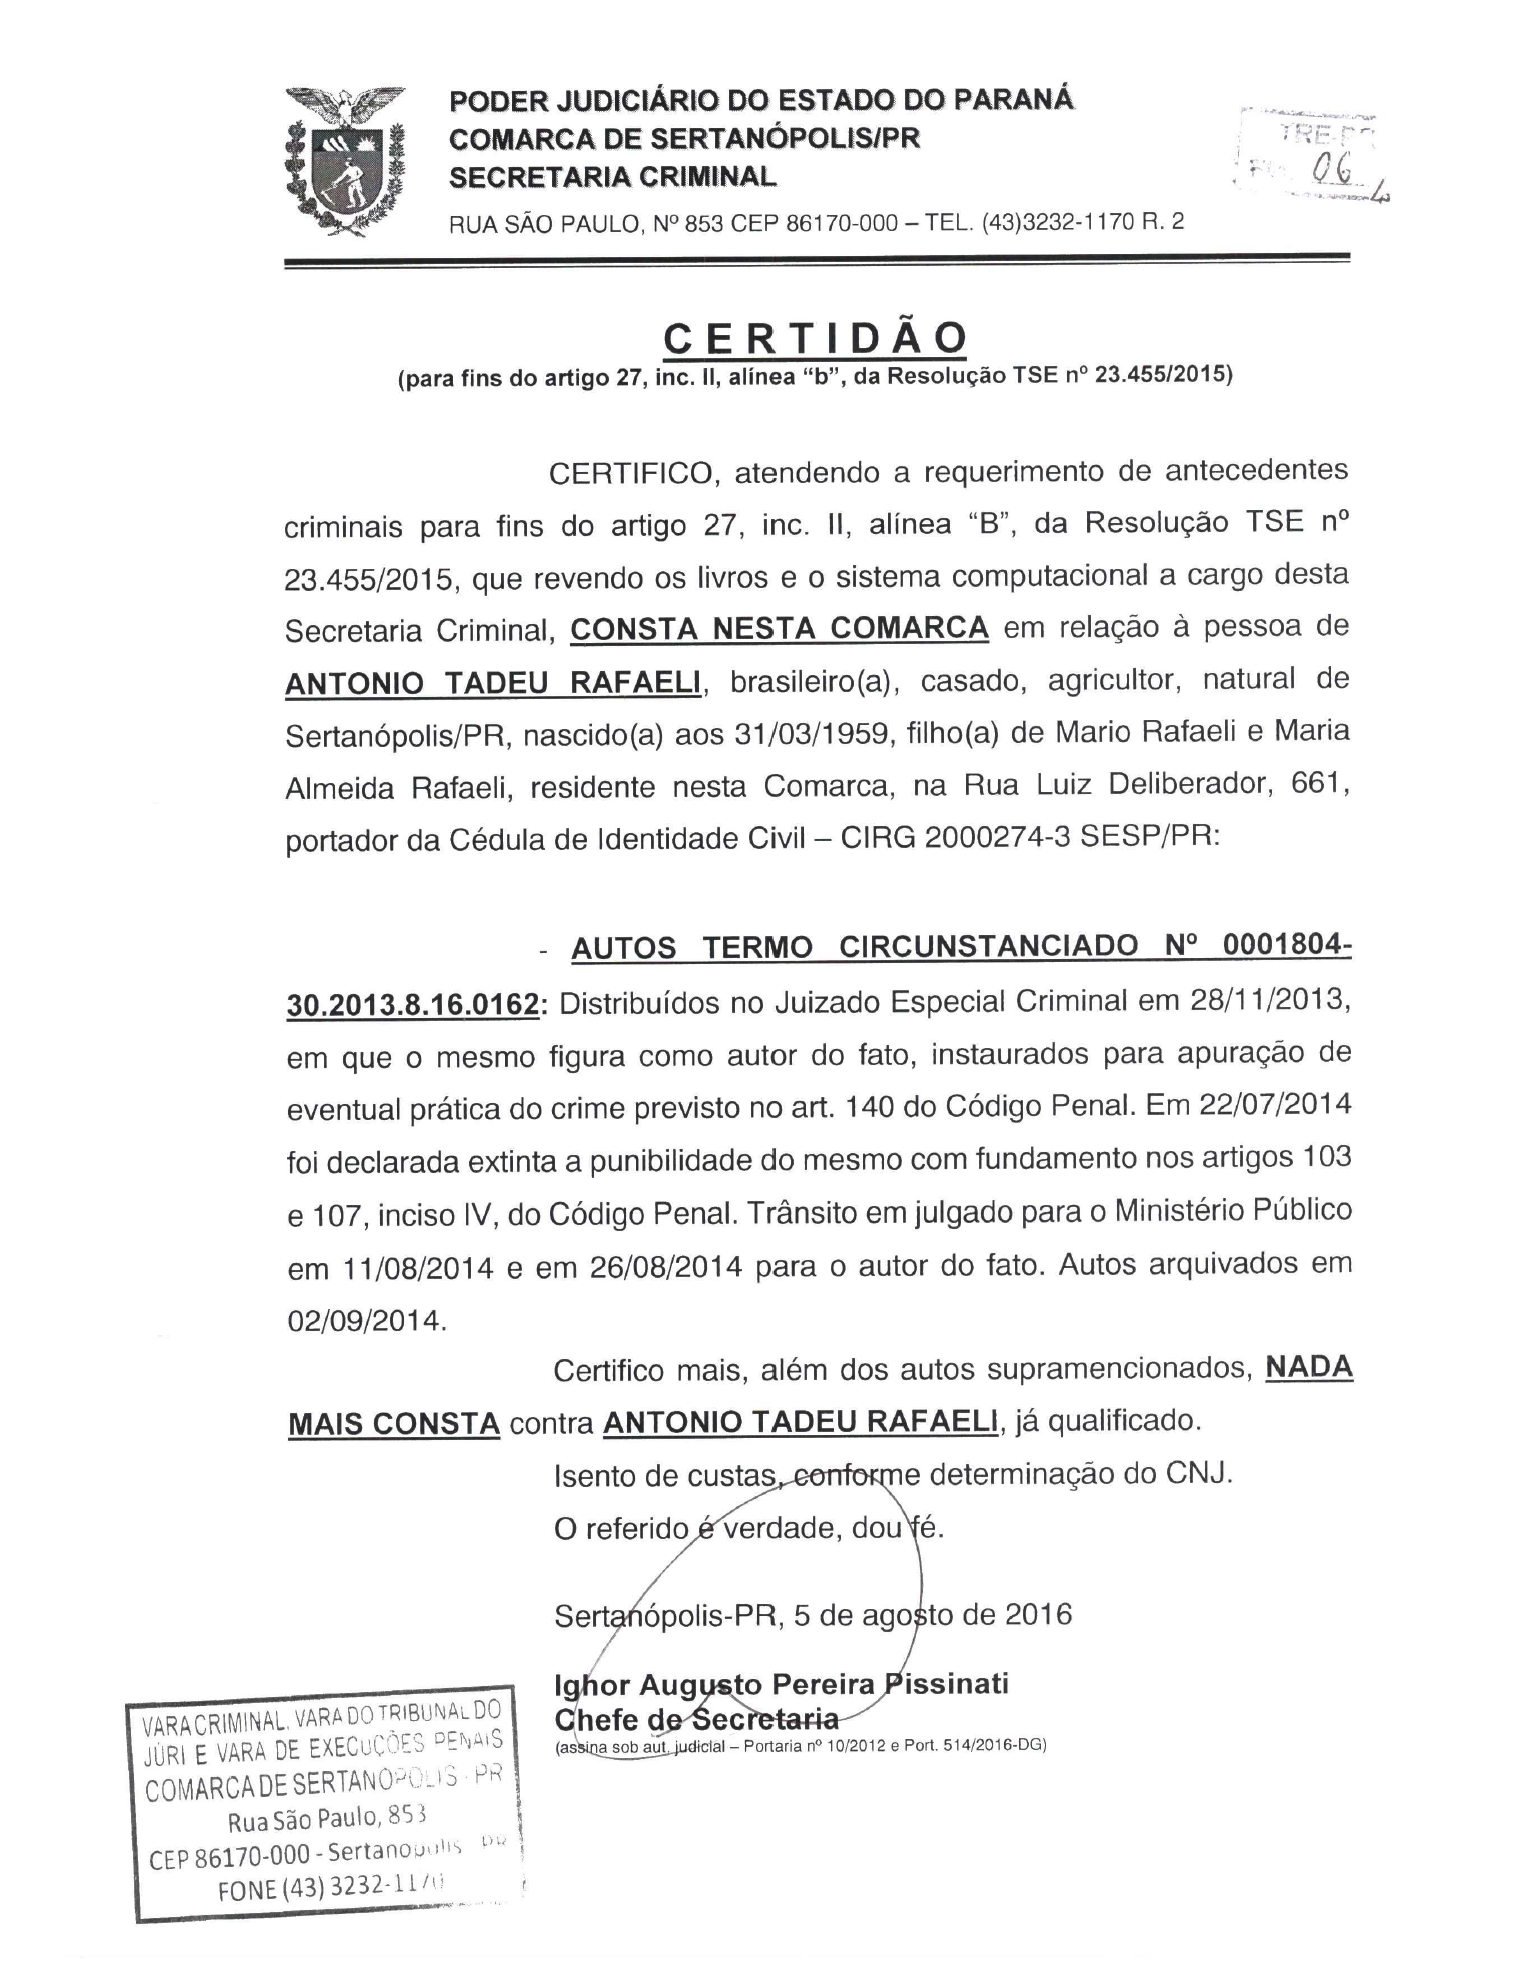 Atestado de Antecedentes Criminais - Governo Do Estado de São